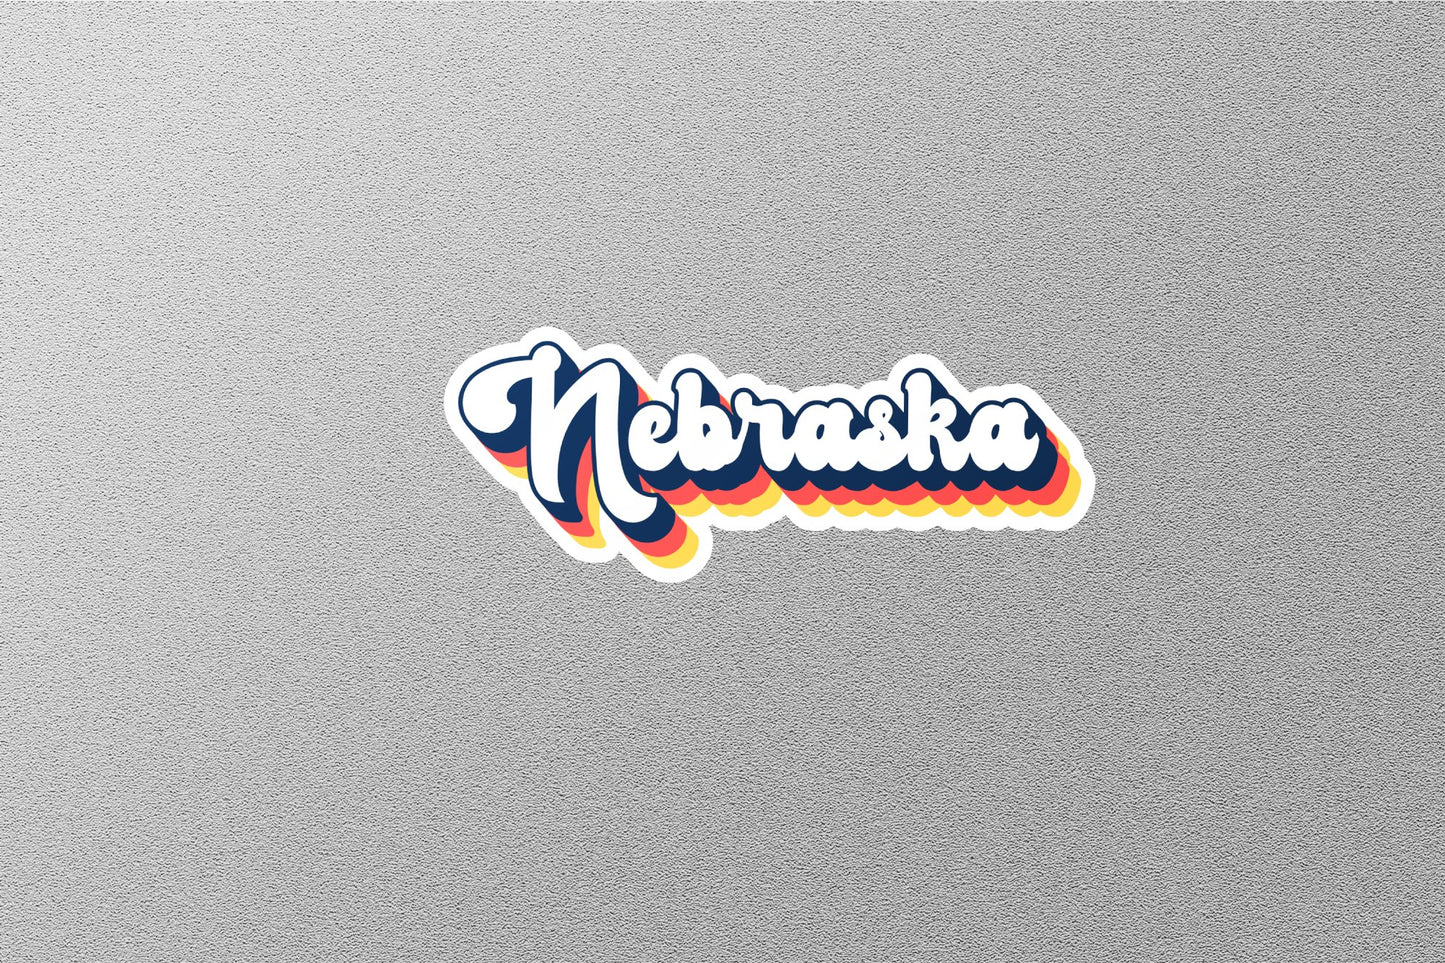 Retro Nebraska State Sticker